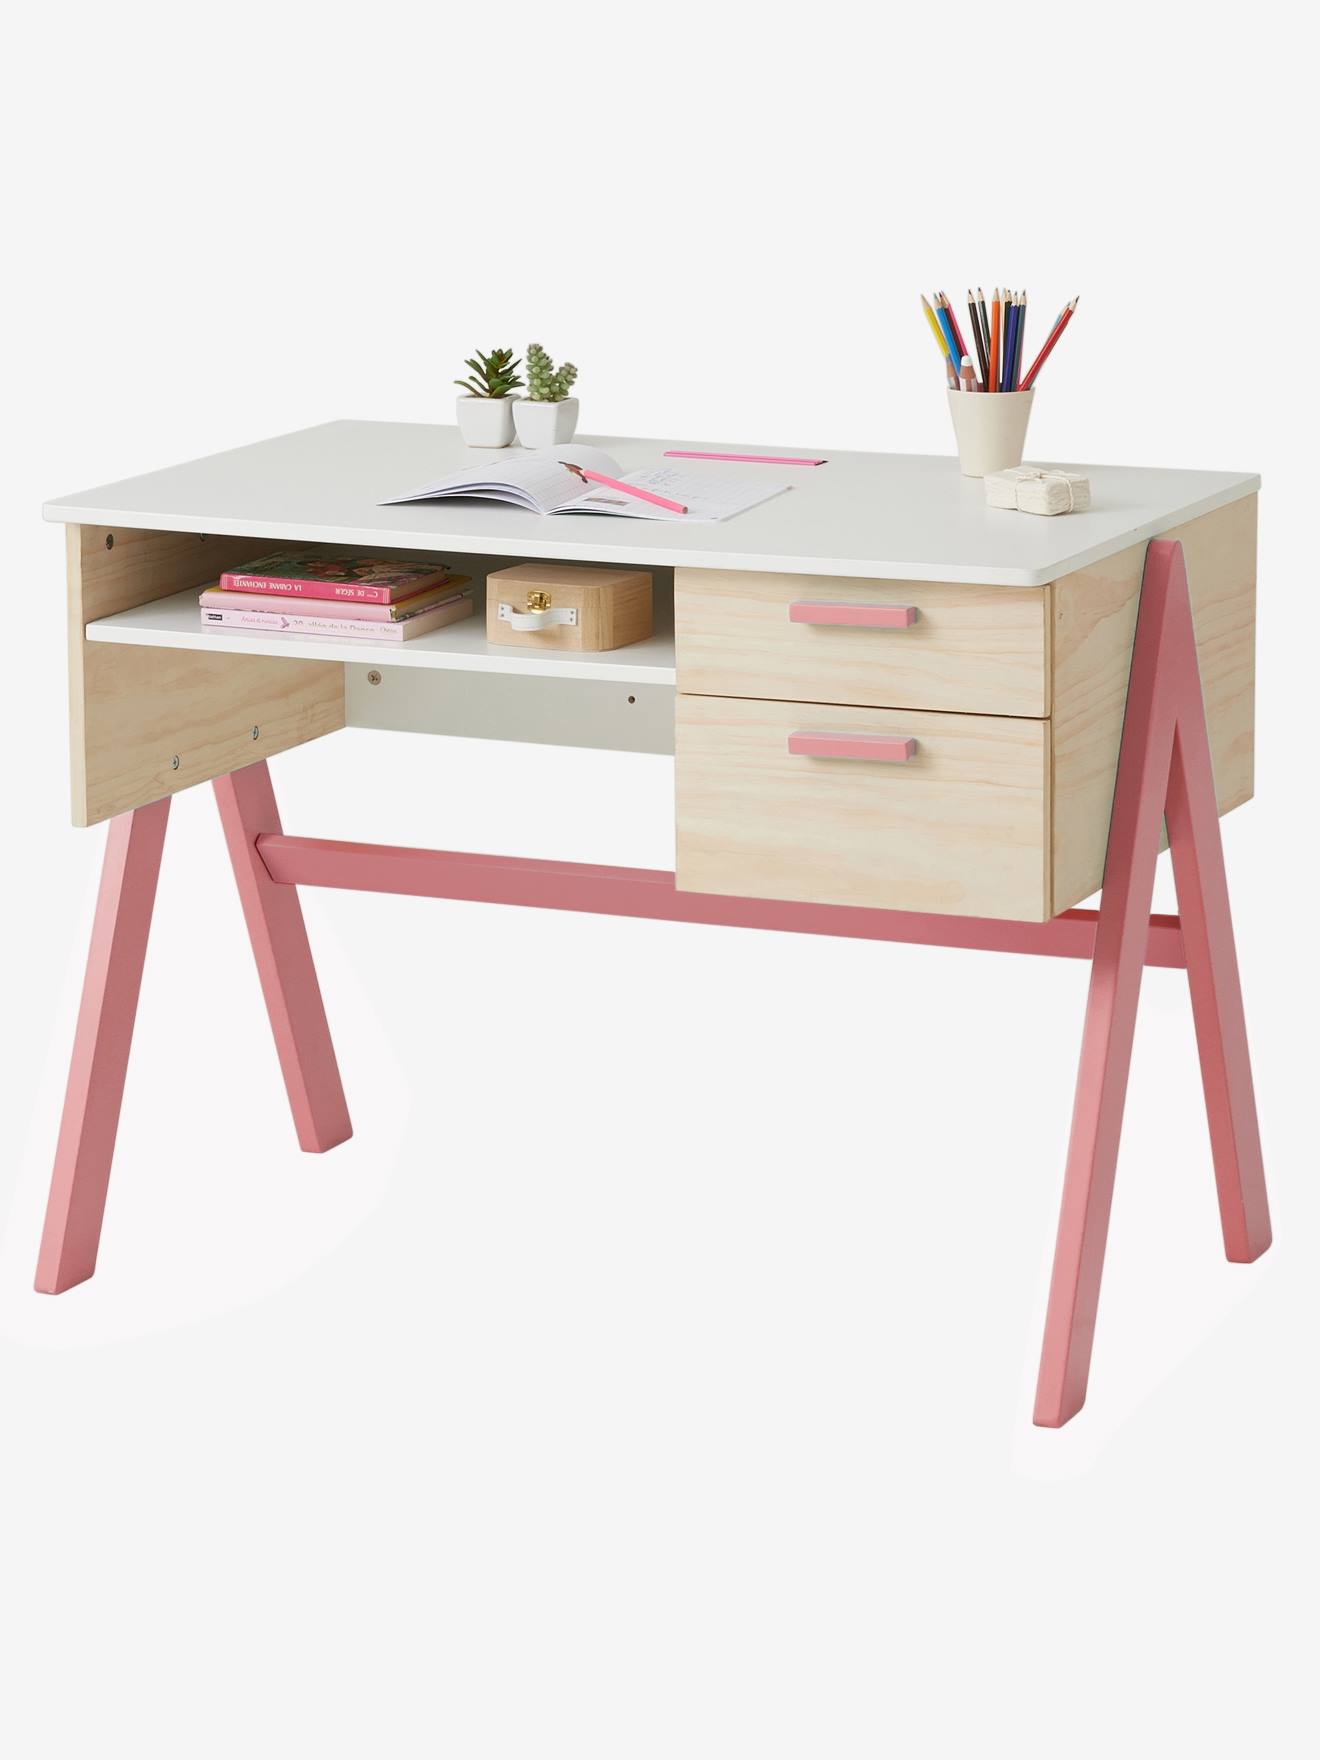 höhenverstellbar Mendler Kinderschreibtisch Schülerschreibtisch Schreibtisch Oxford neigbar ~ pink/rosa